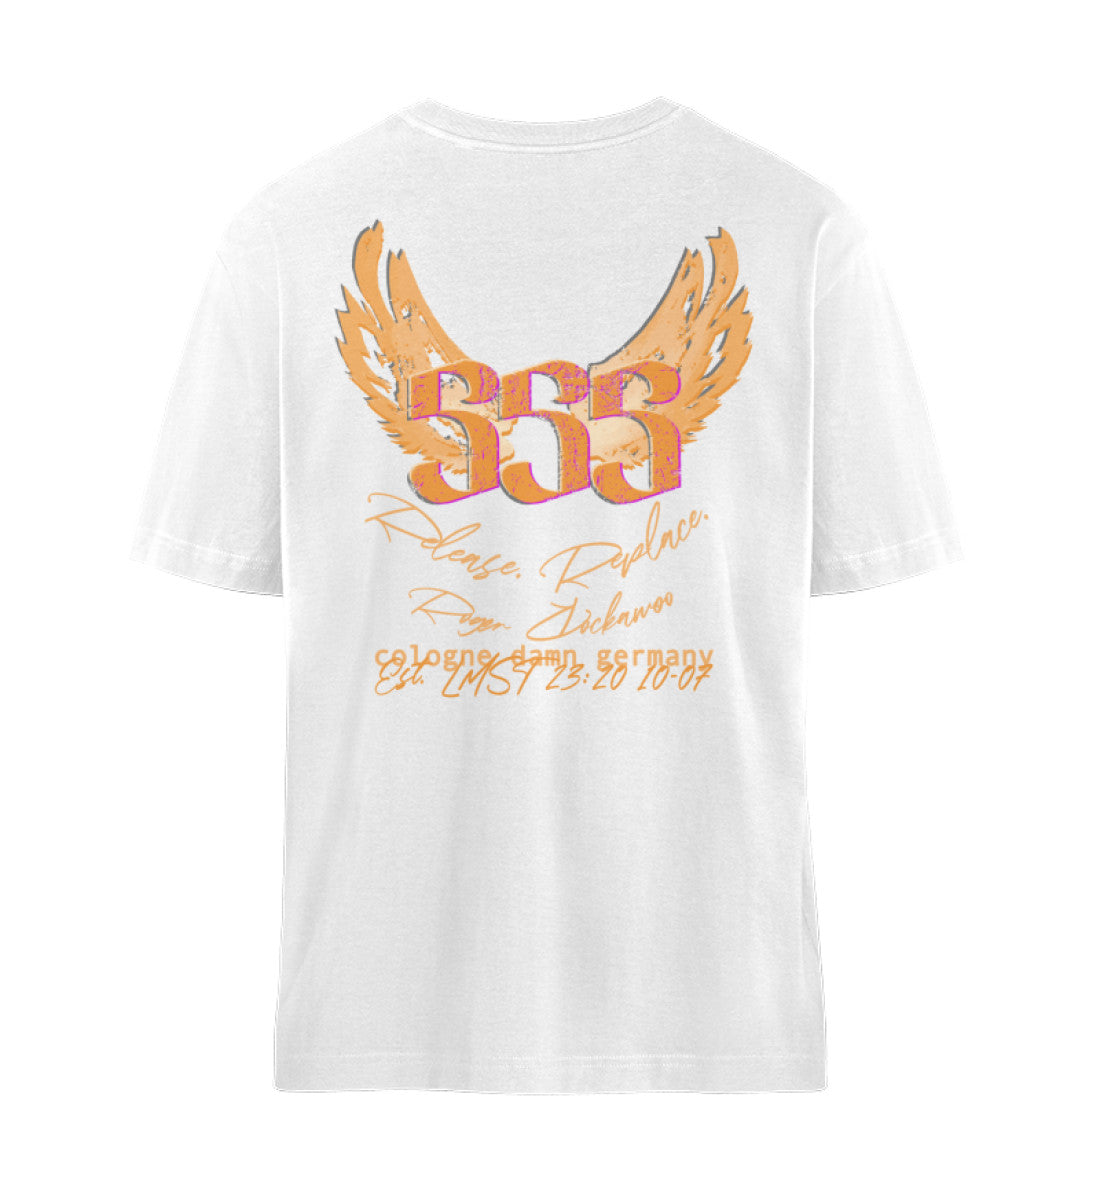 Weißes T-Shirt Unisex Relaxed Fit für Frauen und Männer bedruckt mit dem Design der Roger Rockawoo Kollektion Engelszahl 555